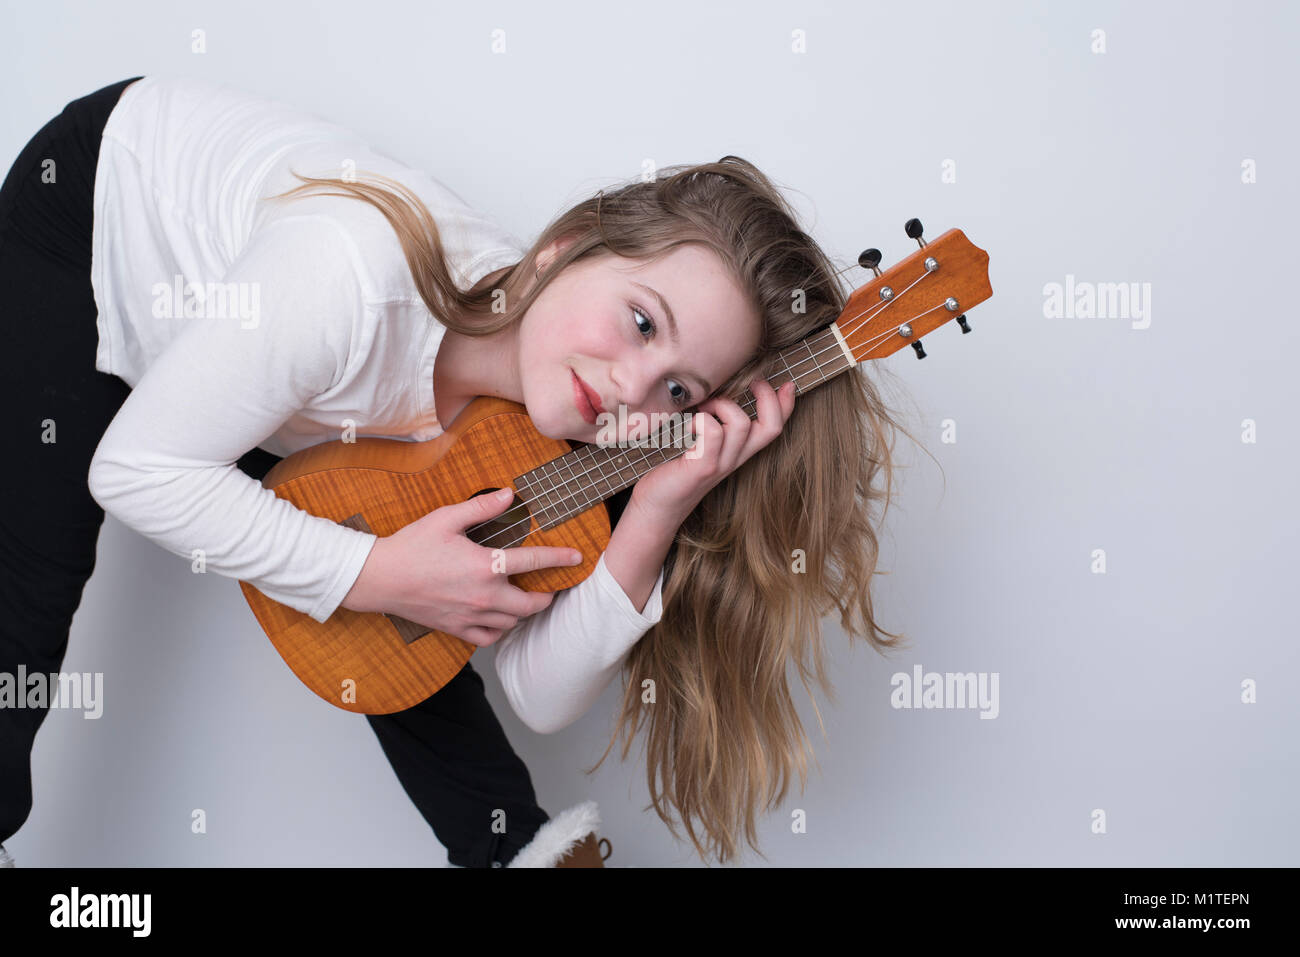 Girl ukulele hi-res stock photography and images - Alamy